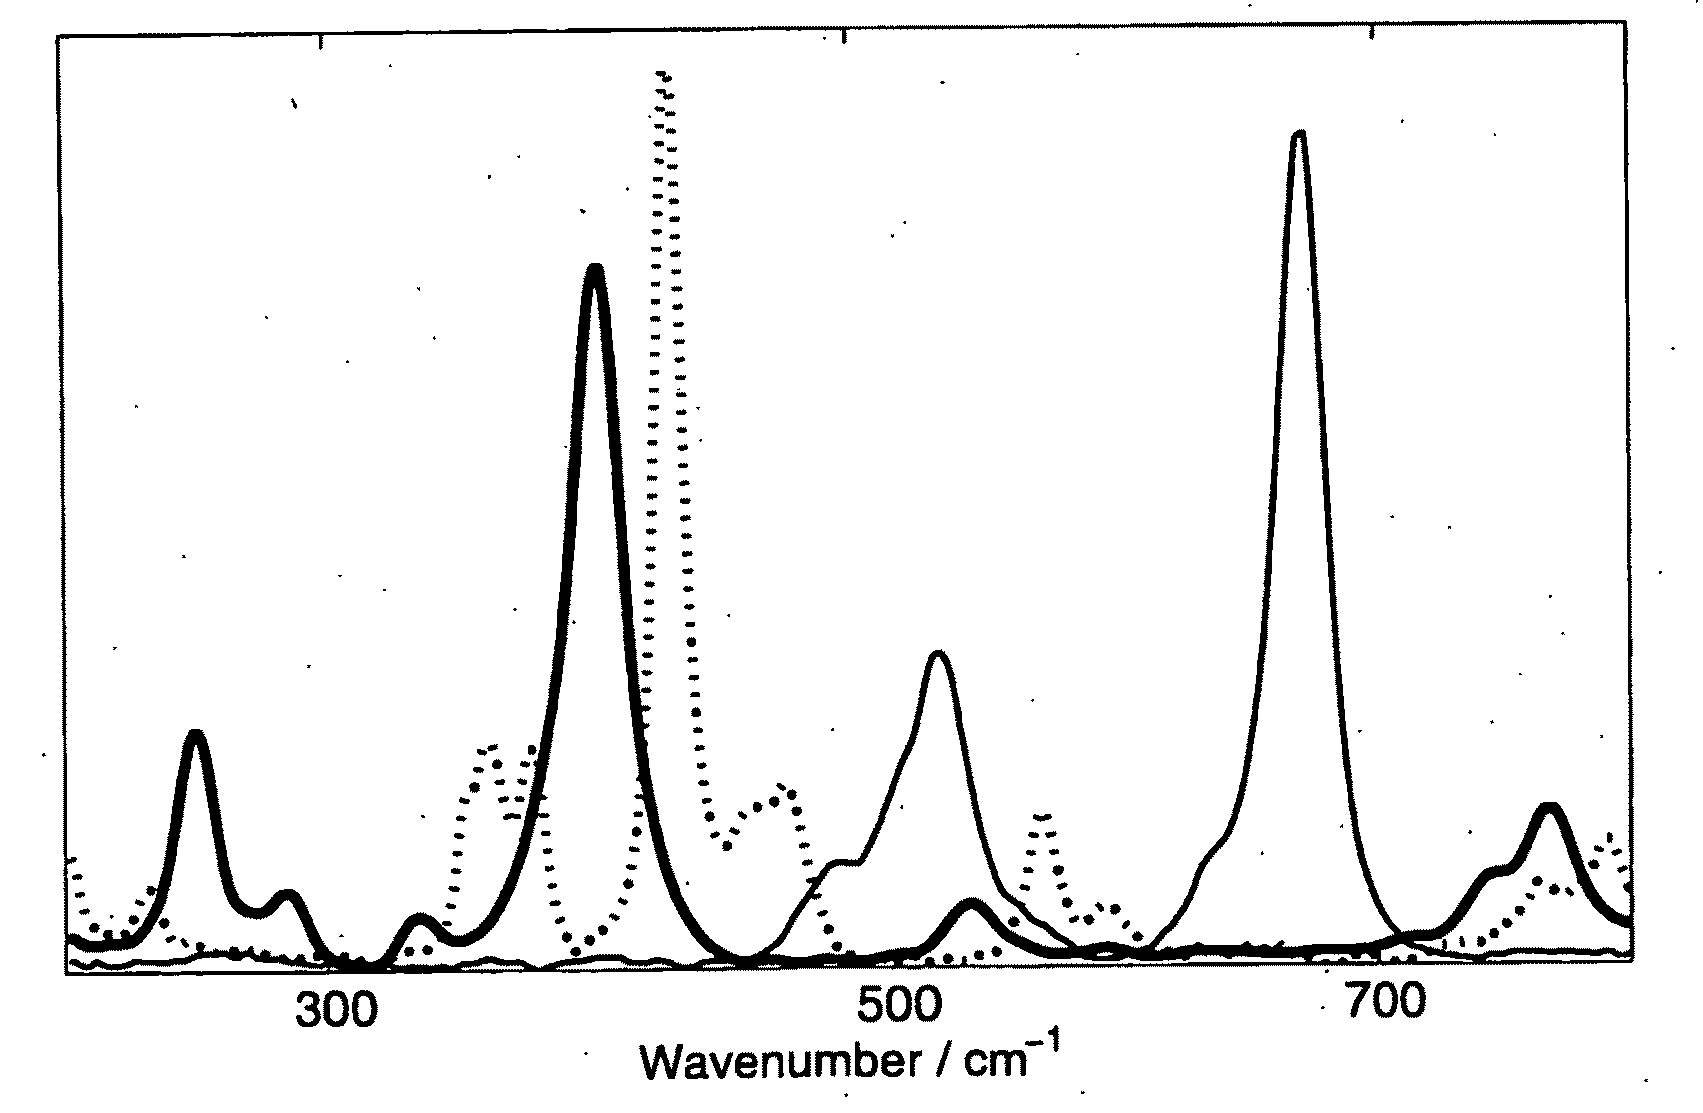 Spectroscopic analysis methods